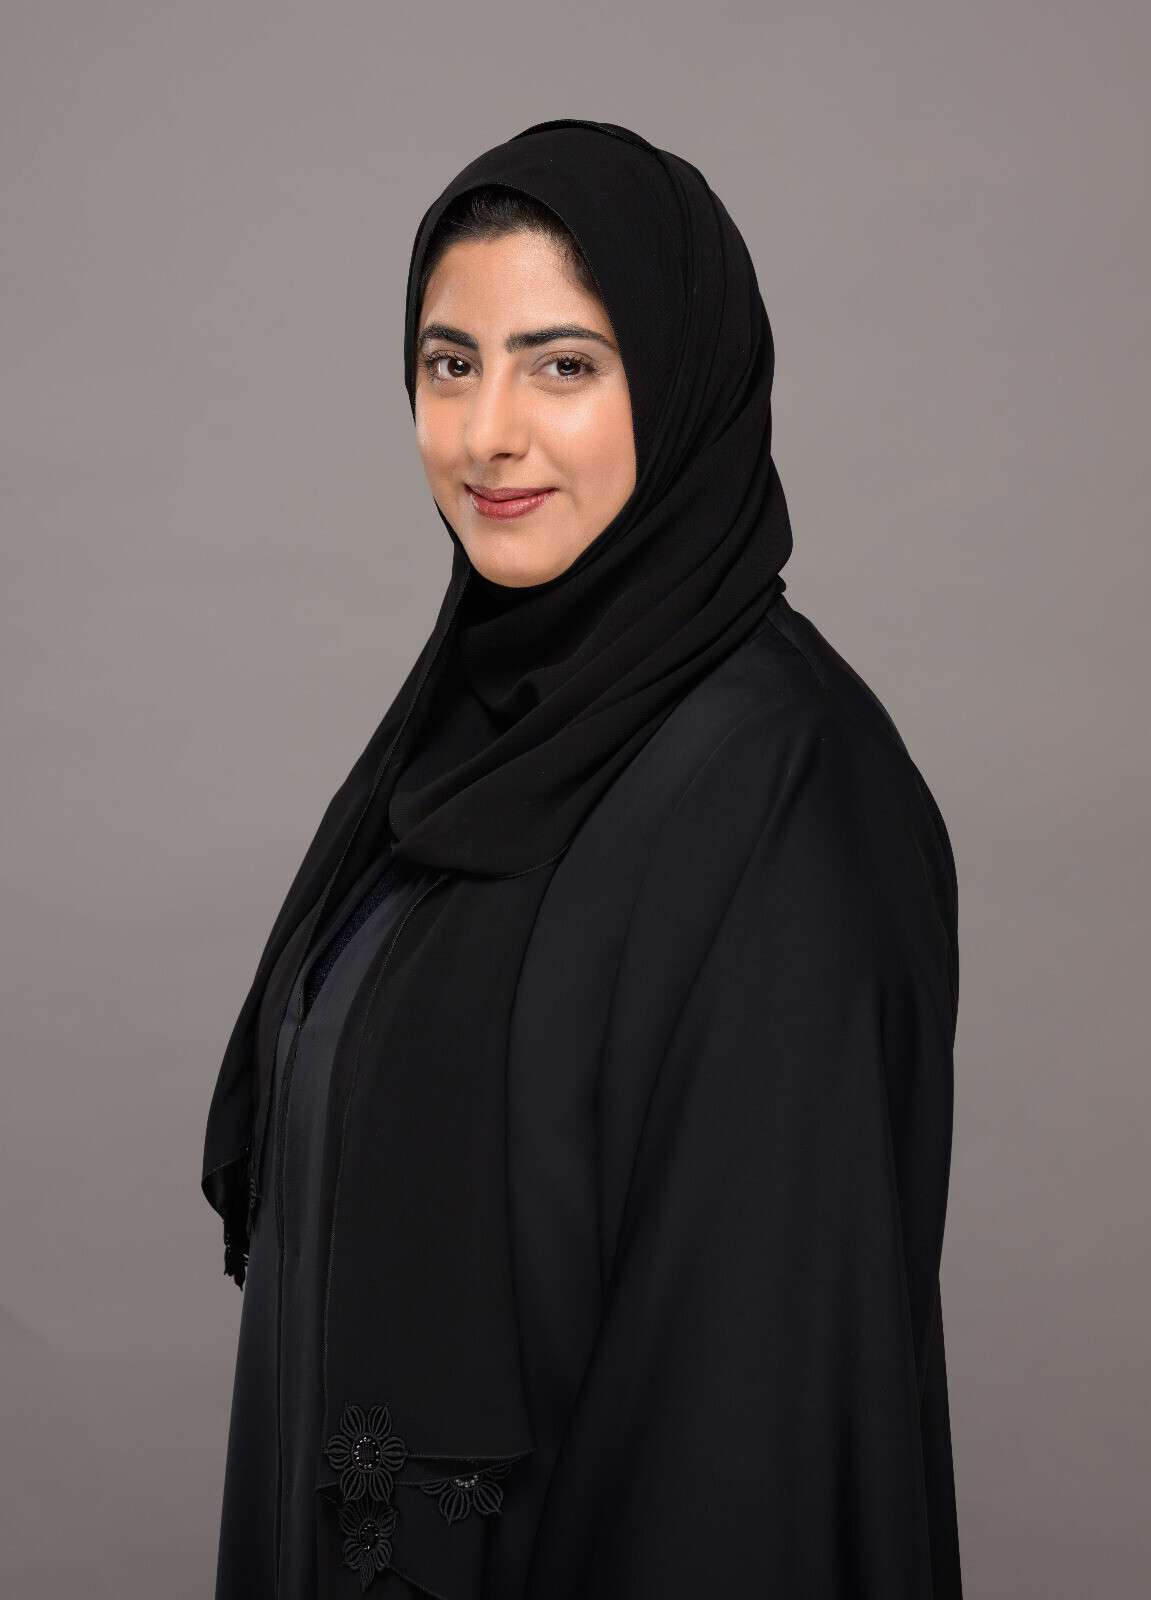 المرأة تستحوذ على نسبة 11% من مقاعد مجلس الإدارة في الشركات المدرجة عبر دولة الإمارات و5% في دول مجلس التعاون الخليجي